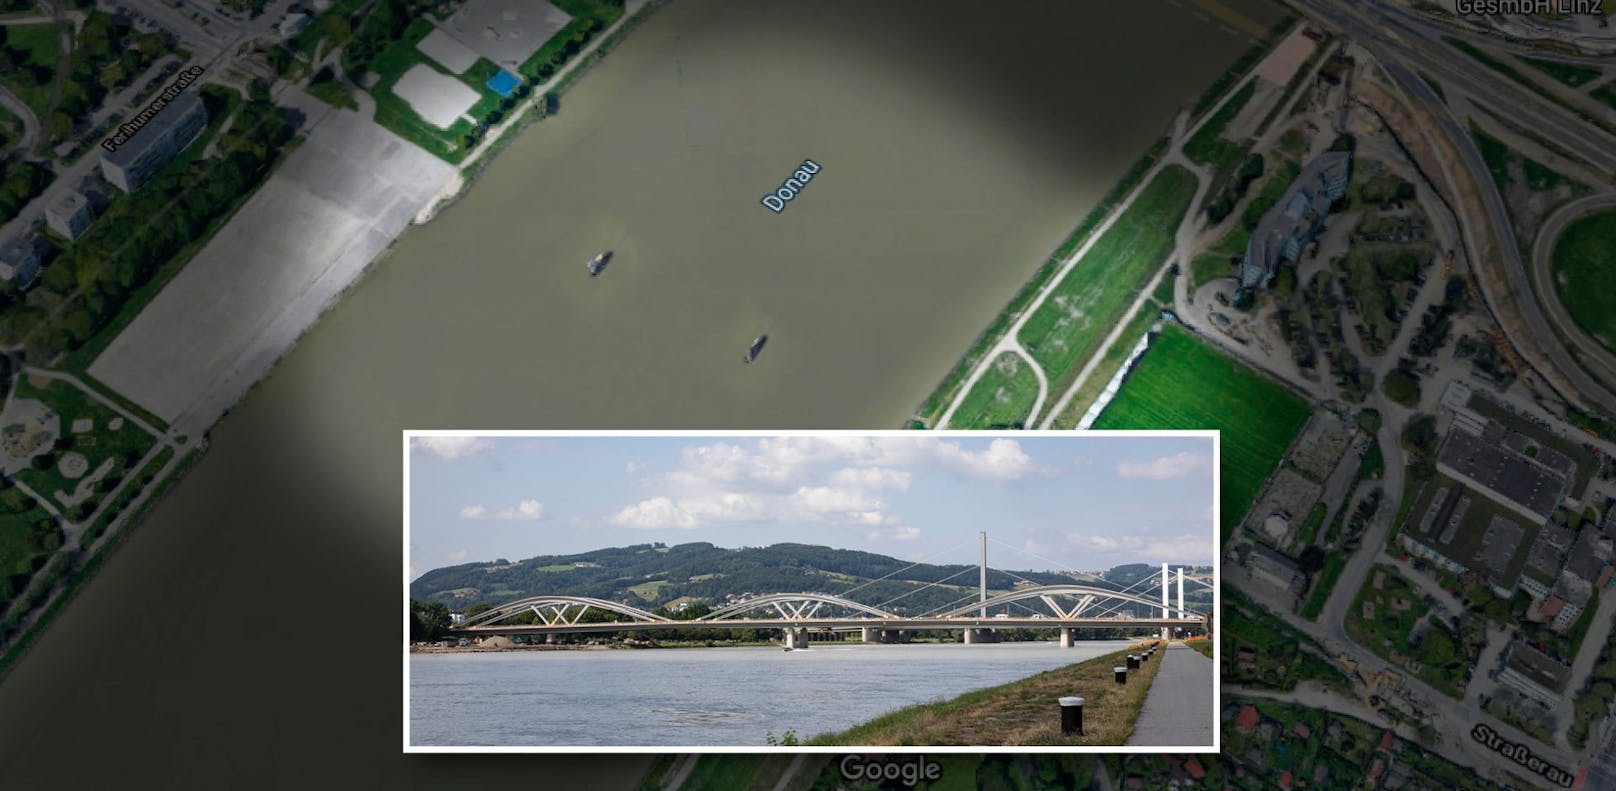 Am 28. August wird die neue Donaubrücke feierlich eröffnet. Auf Google ist sie noch gar nicht zu sehen.